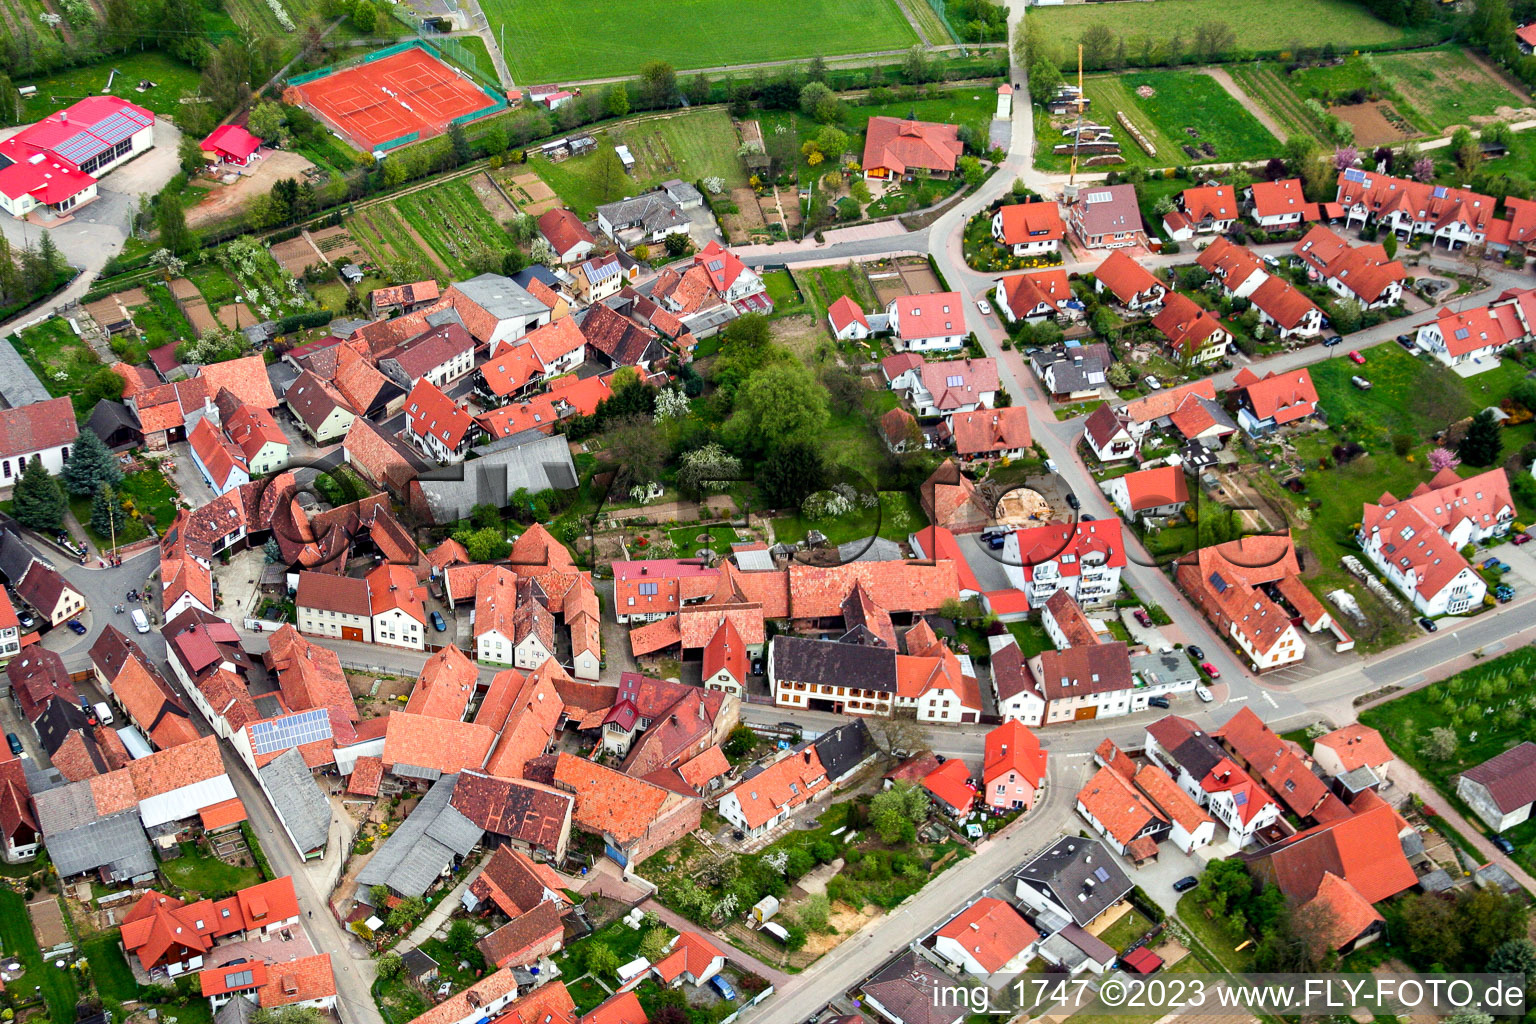 Quartier Drusweiler in Kapellen-Drusweiler dans le département Rhénanie-Palatinat, Allemagne vue du ciel